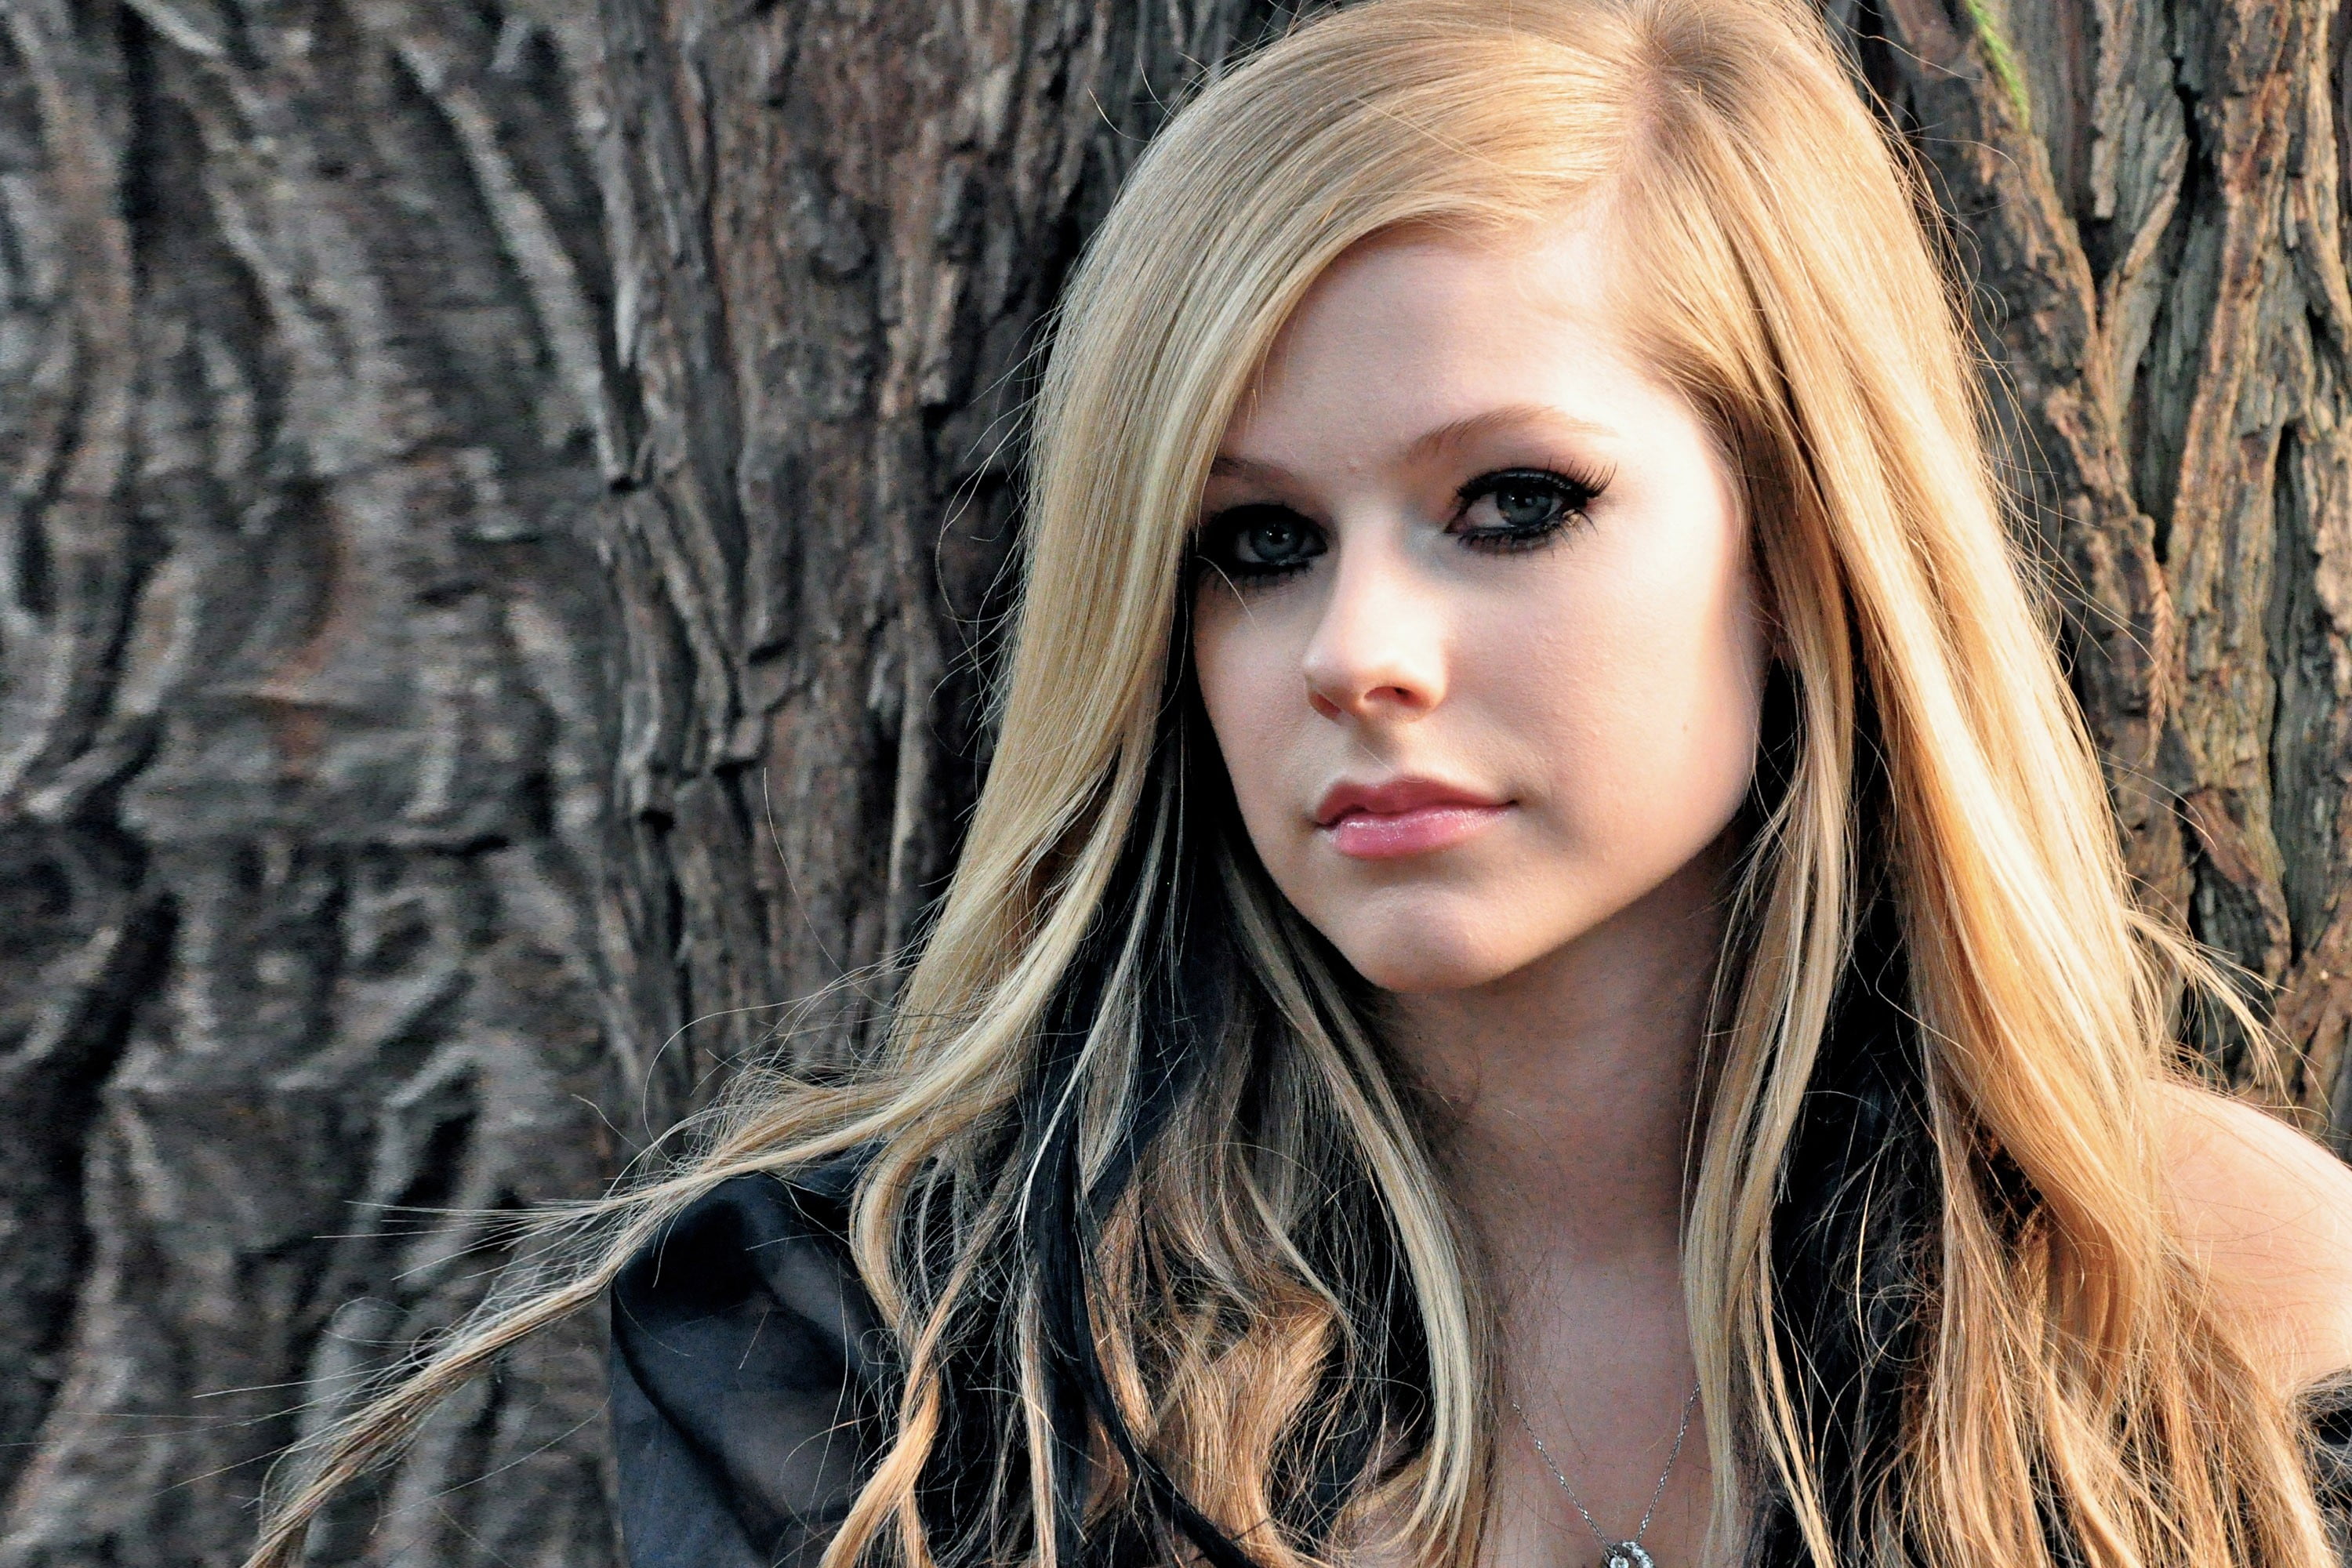 Avril Lavigne Avril Lavigne Open Mouth Singer Green Hair Hd Wallpaper Wallpaper Flare